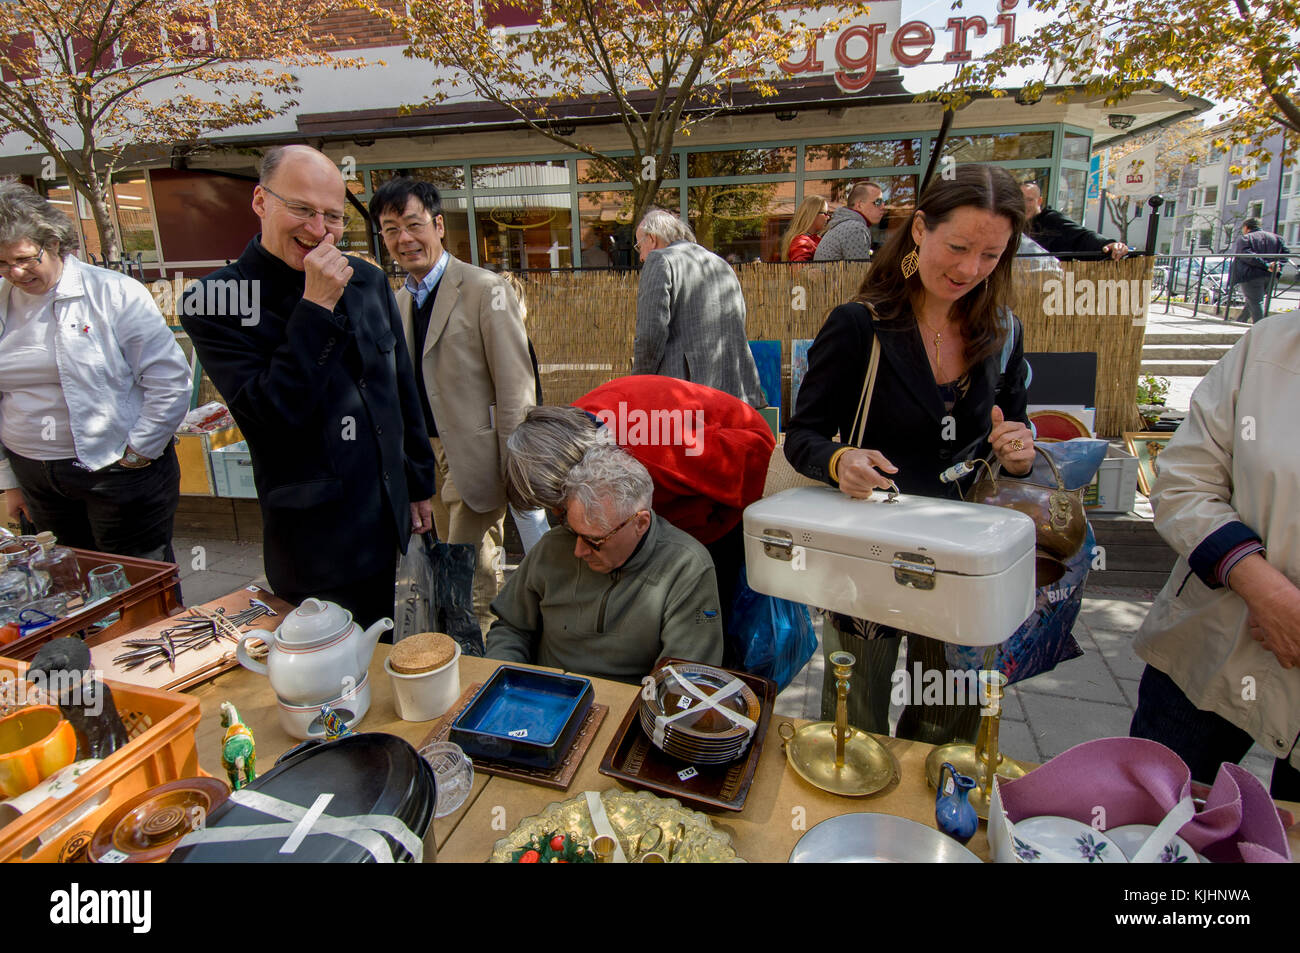 Les gens se trouvent dans un marché aux puces, Upplands Väsby, Suède. Banque D'Images